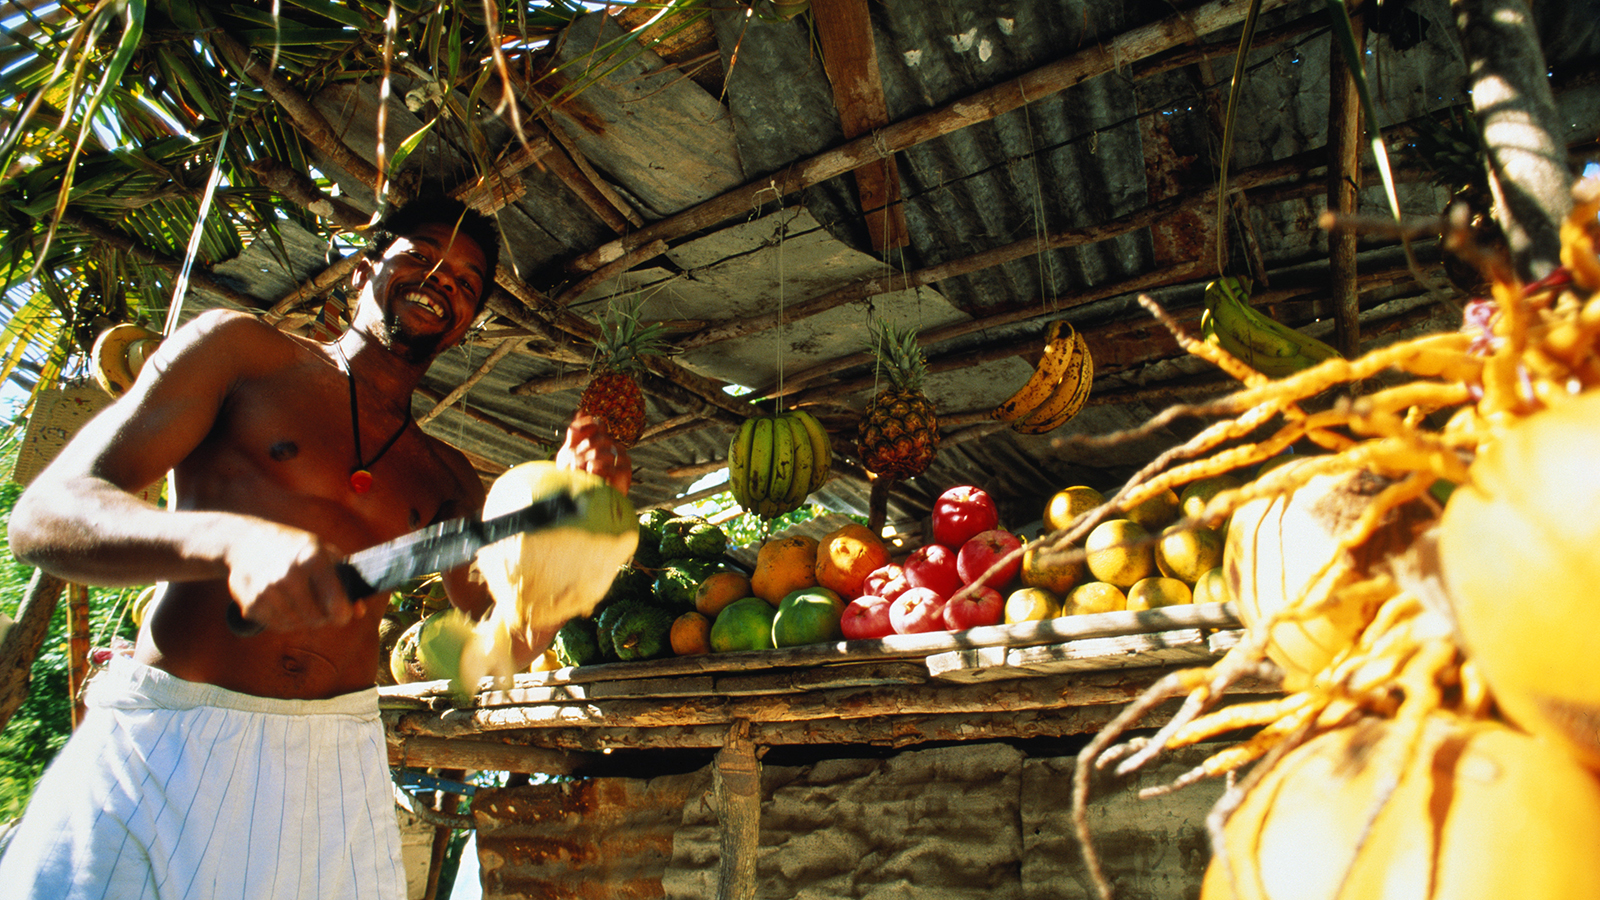 jamaica-fruit-vendor